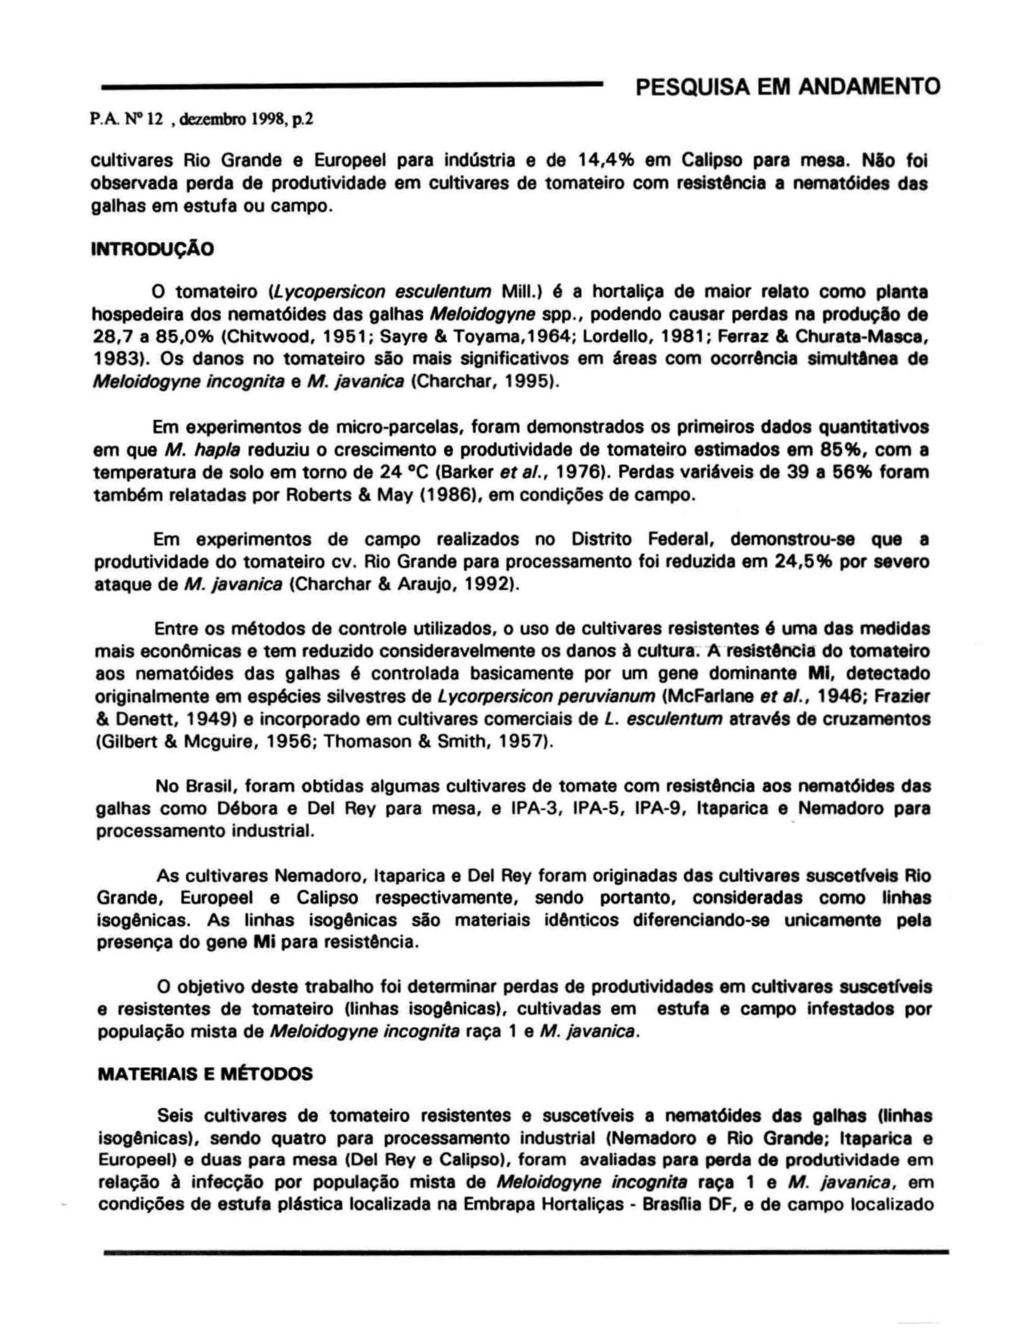 P.A. N" 12, dezembro 1998, p.2 cultivares Rio Grande e Europeel para indústria e de 14.4% em Callpso para mesa.